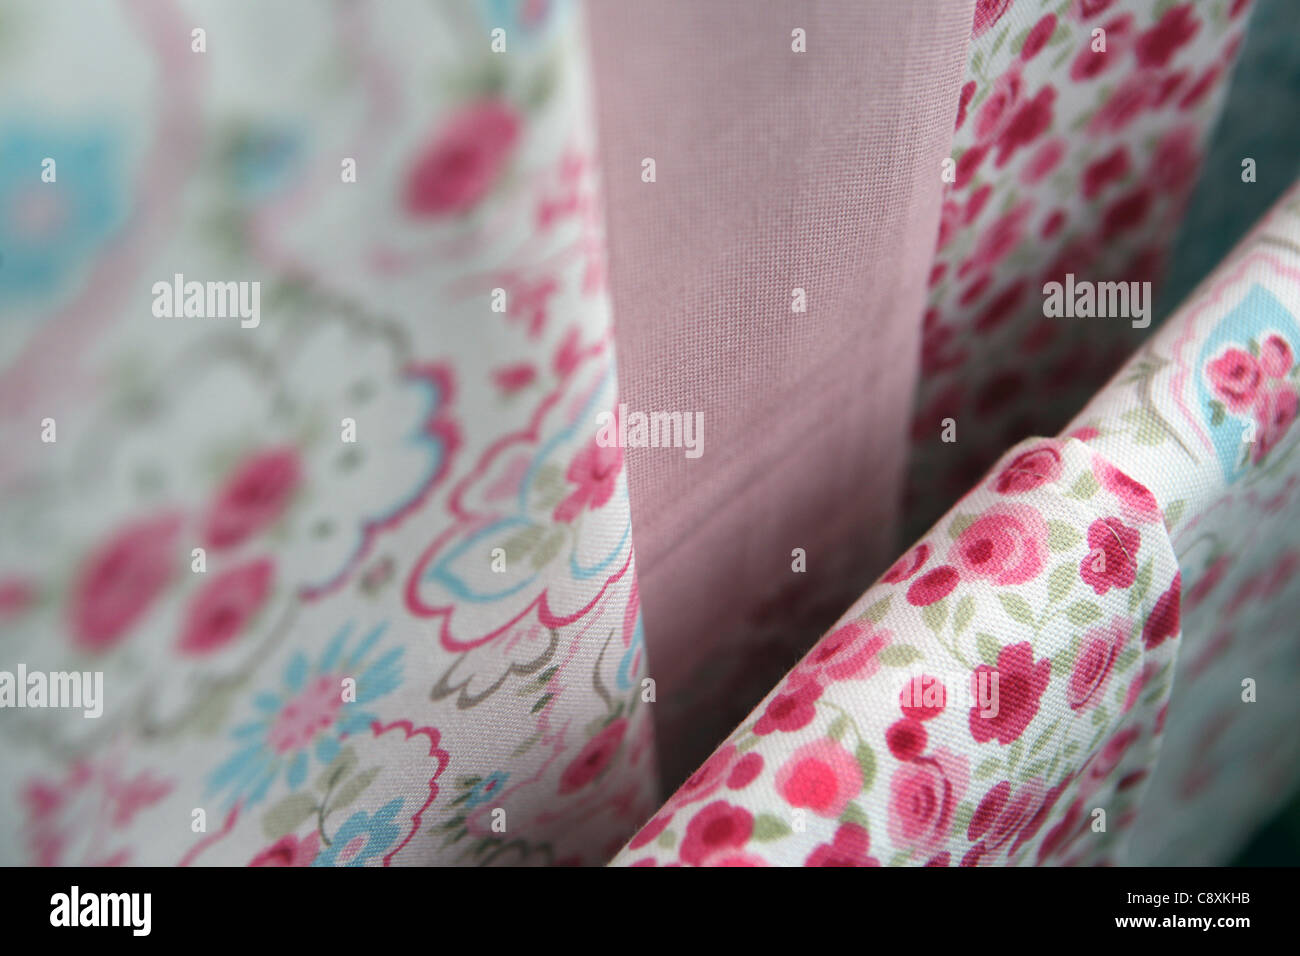 Printed textiles. Stock Photo